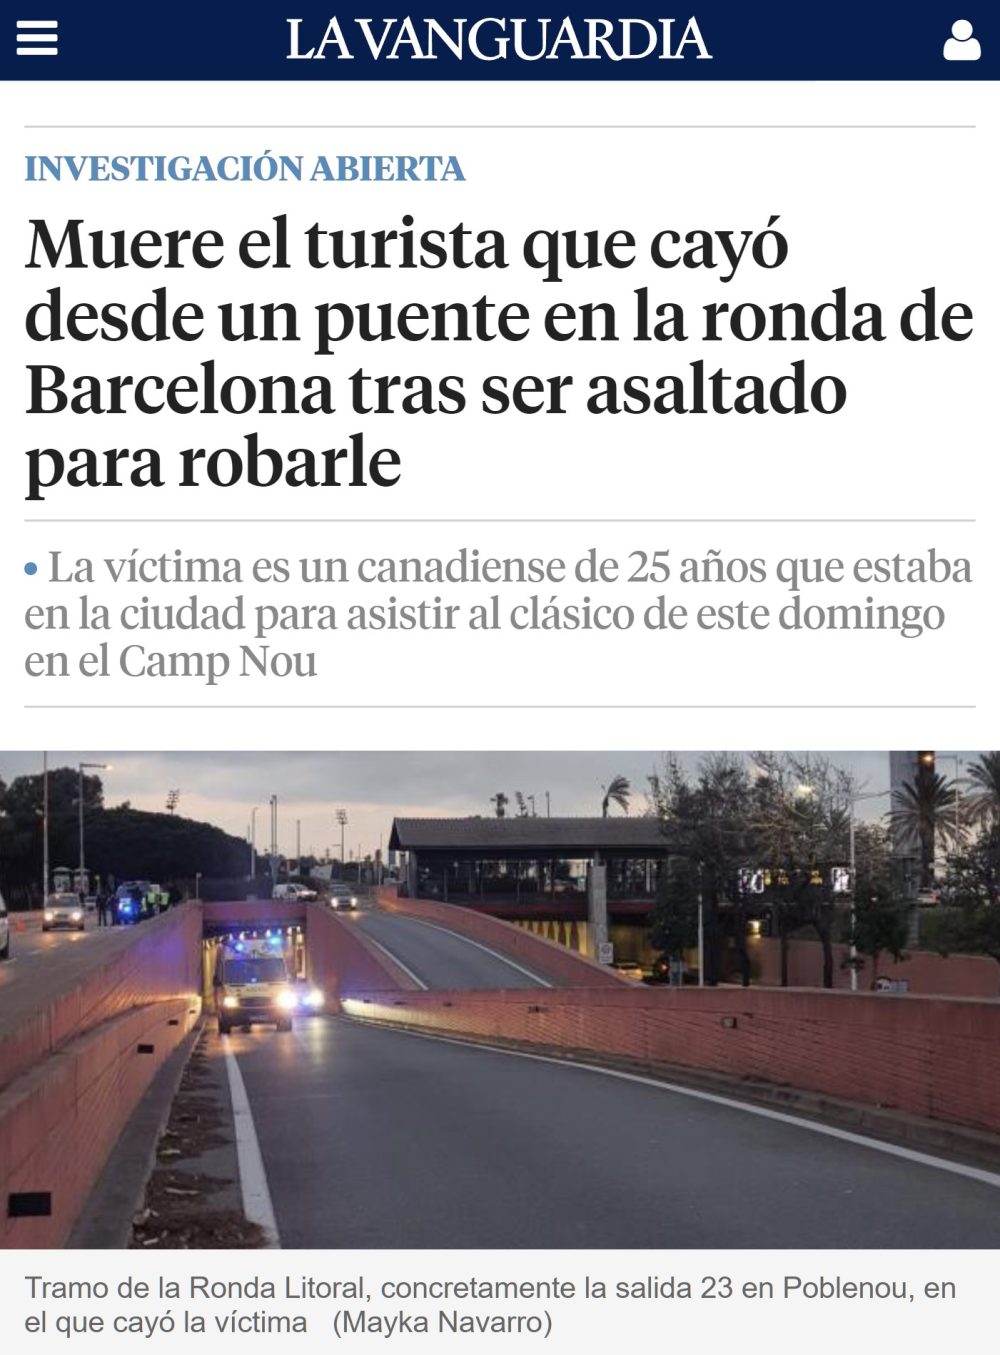 Lo de "Tourists Go Home" no va a hacer falta si el peligro sigue escalando en Barcelona